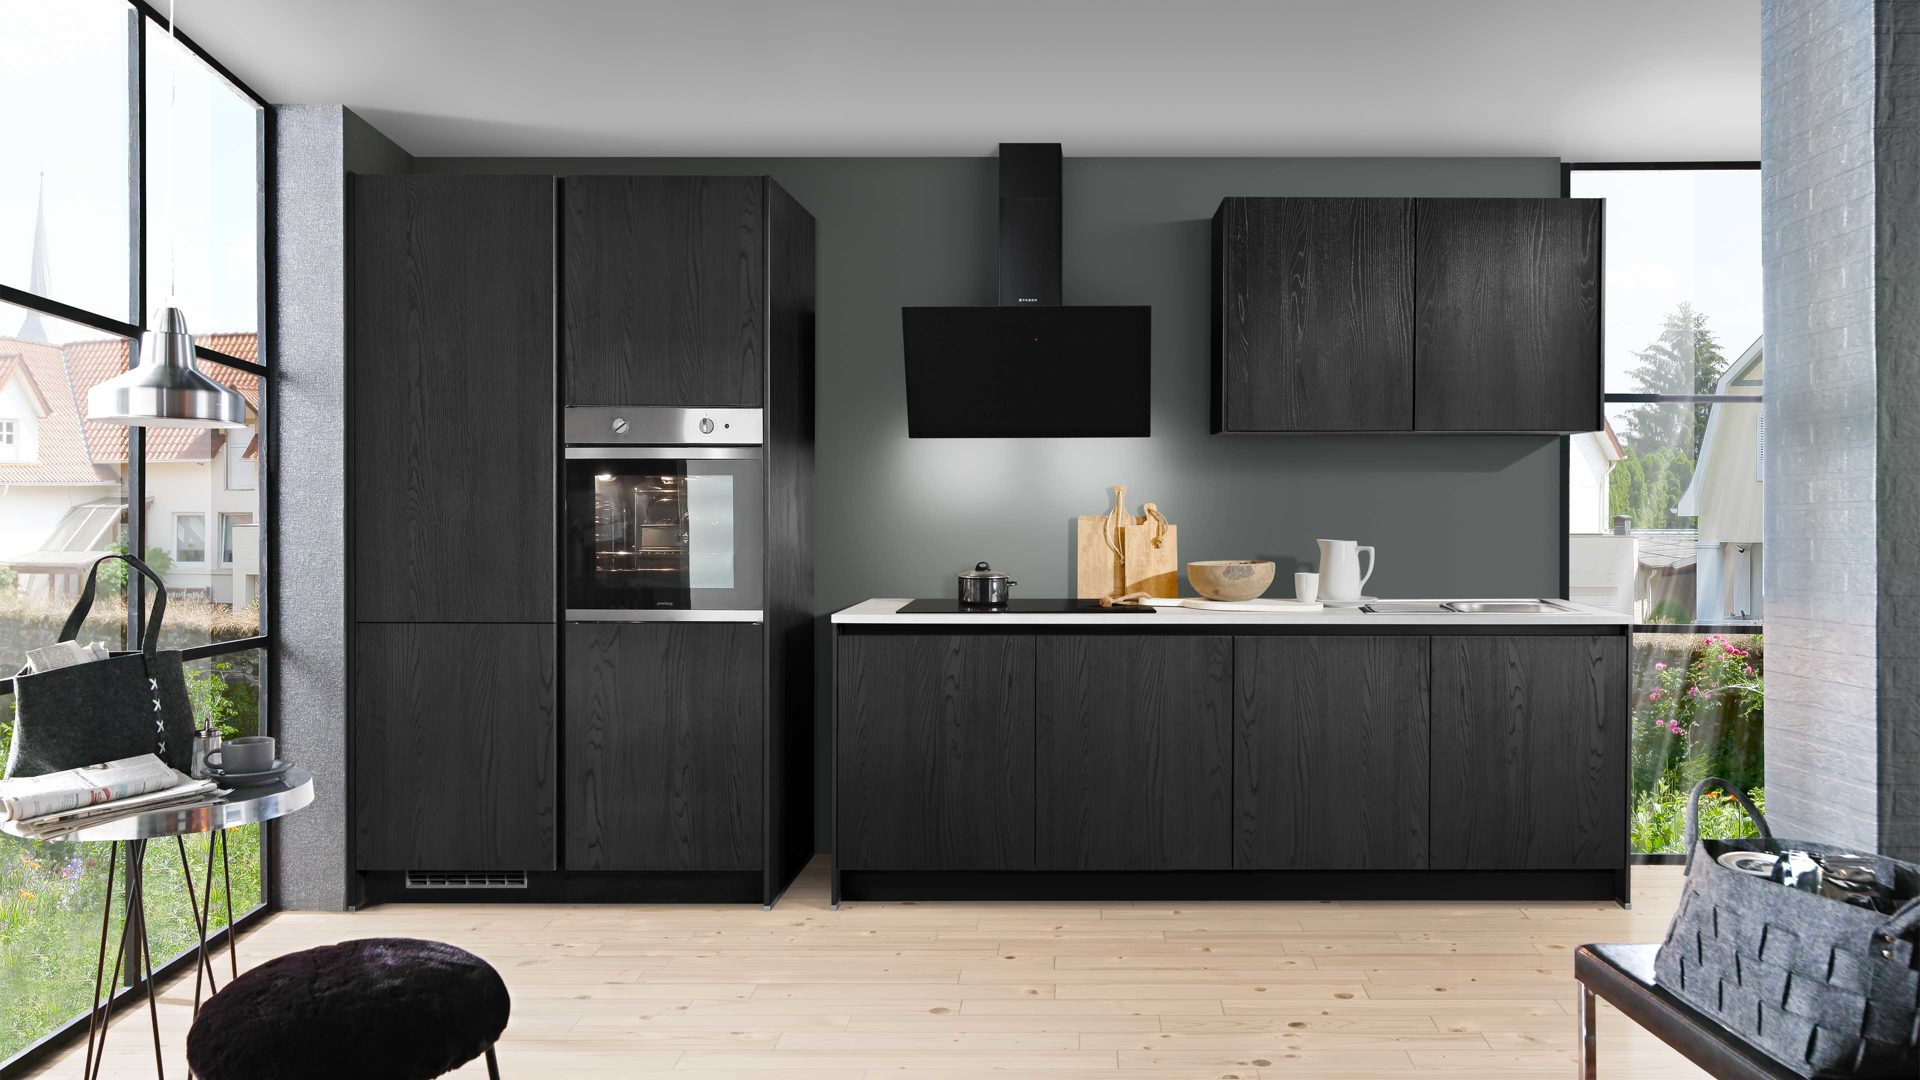 Einbauküche Express küchen aus Holz in Schwarz EXPRESS KÜCHEN Einbauküche Plan mit Geschirrspüler Esche Schwarz - zweizeilig